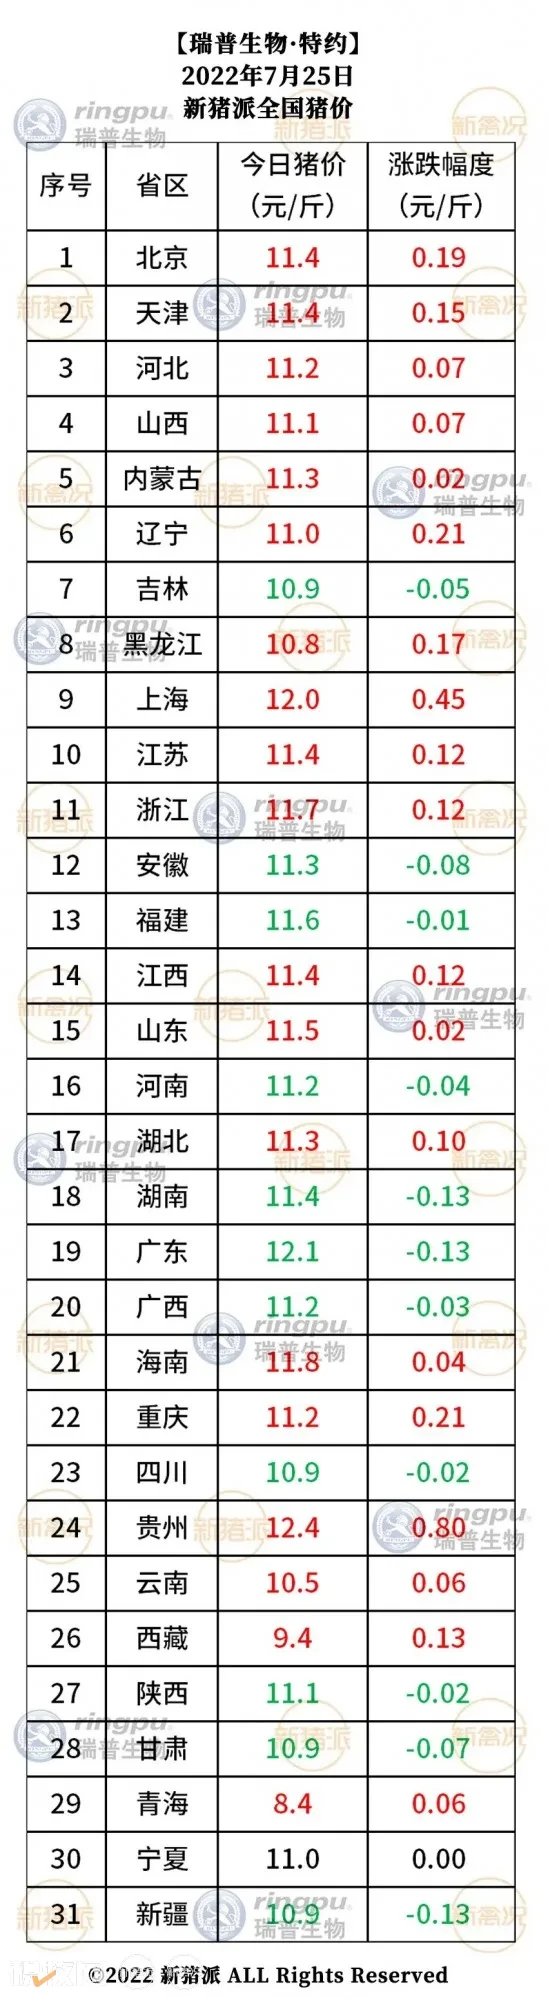 月25日：多地走势向好，贵州再涨0.8元/斤【瑞普生物·猪价指数】"